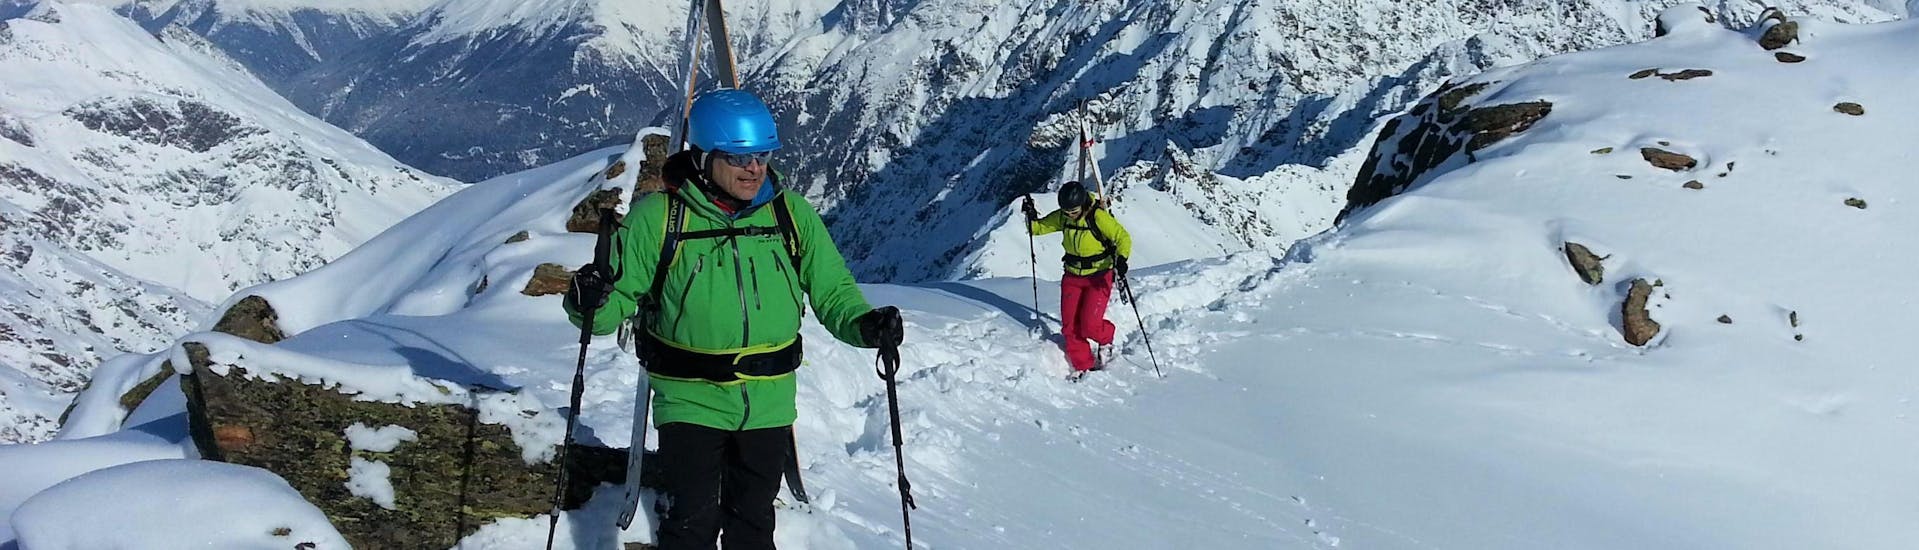 Un guide privé de ski de randonnée de l'école de ski Ski- und Snowboardschule SNOWLINES Sölden montre la magnifique vue sur les sommets enneigés à un participant.